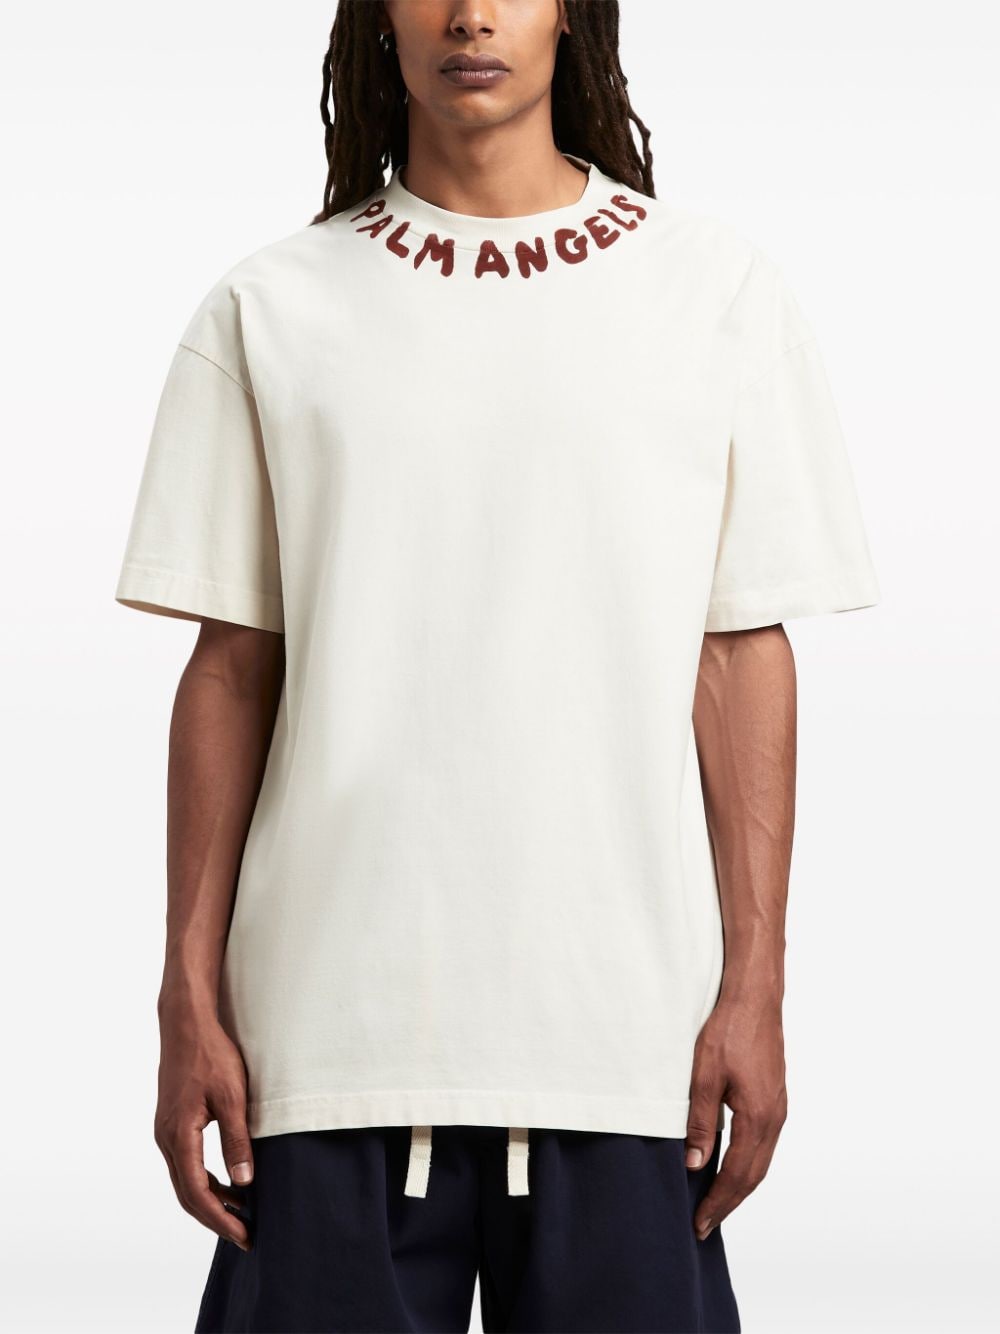 T-shirt blanc avec logo sur le cou